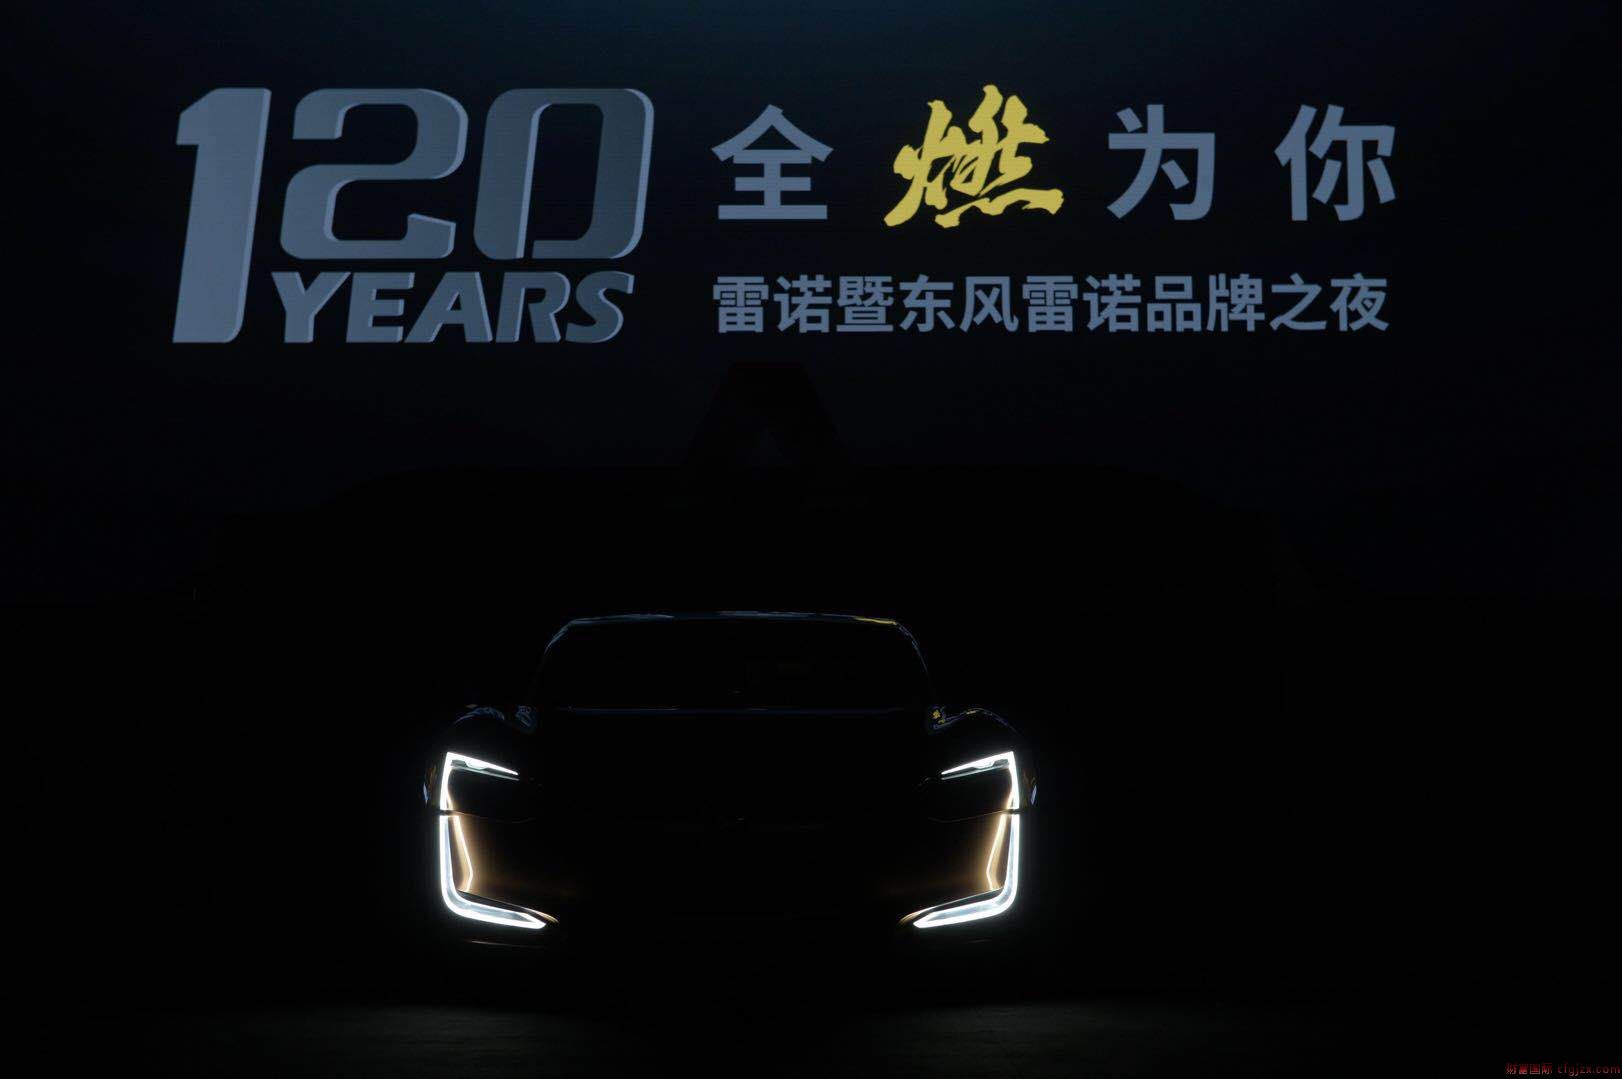 雷诺发布2022愿景 推出120周年限量版车型